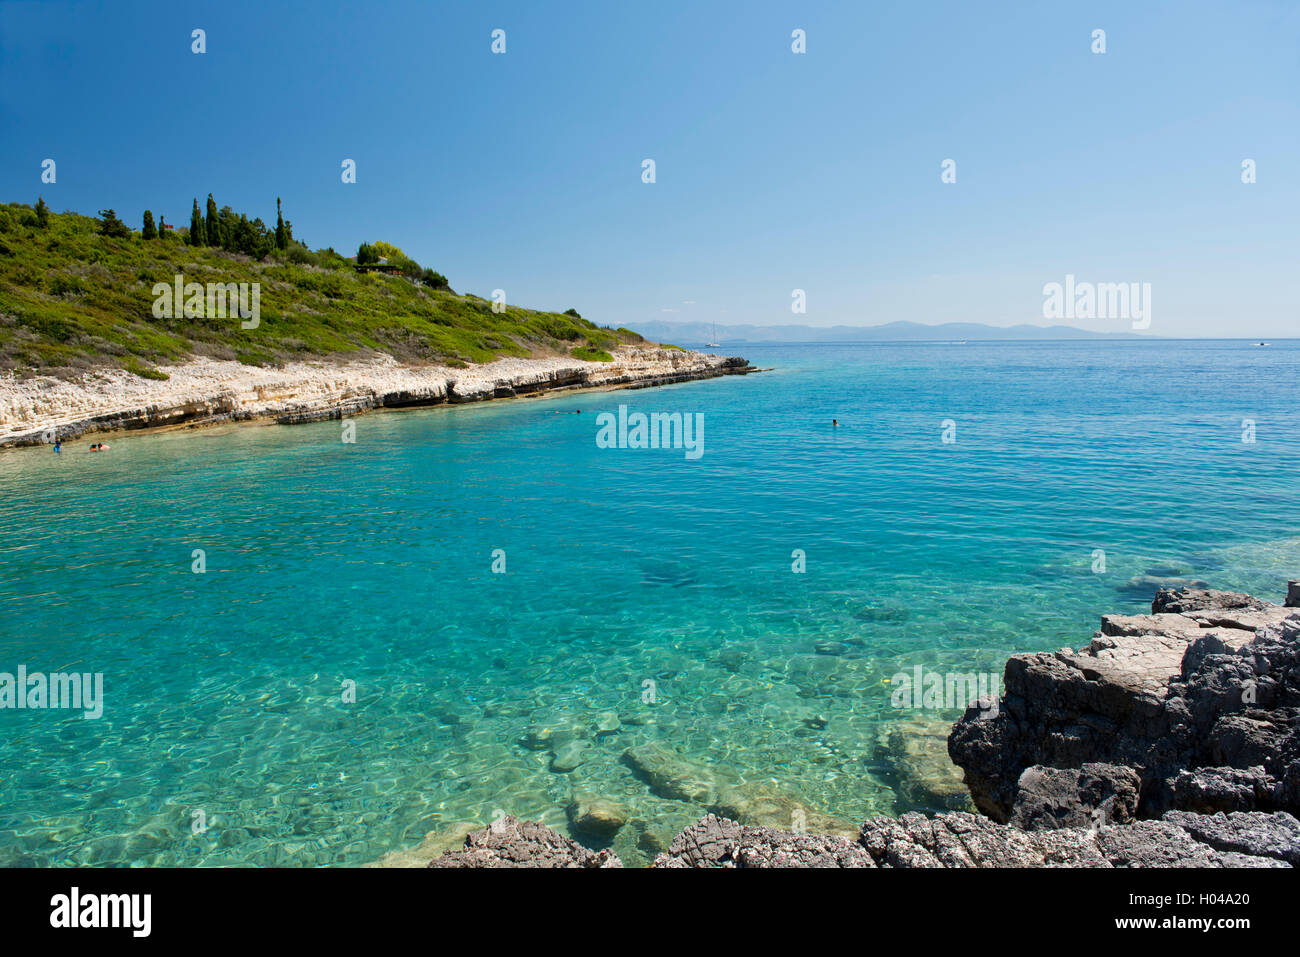 Balos Beach in una baia sulla costa sudoccidentale di Paxos, Isole Ionie, isole greche, Grecia, Europa Foto Stock